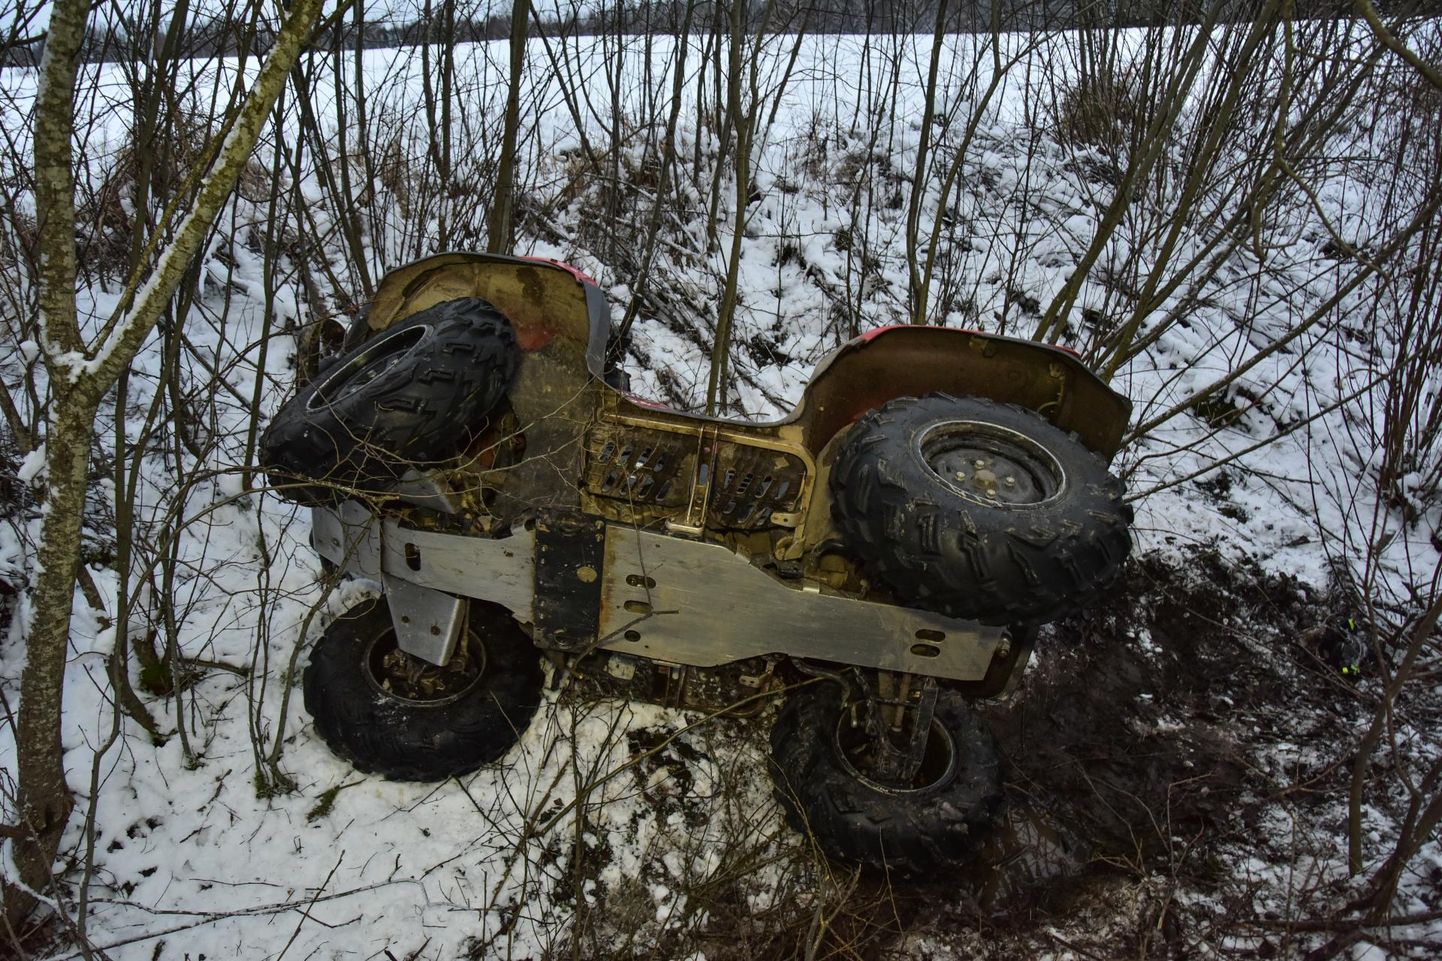 Pildil olev ATV pole konkreetse õnnetusega seotud.